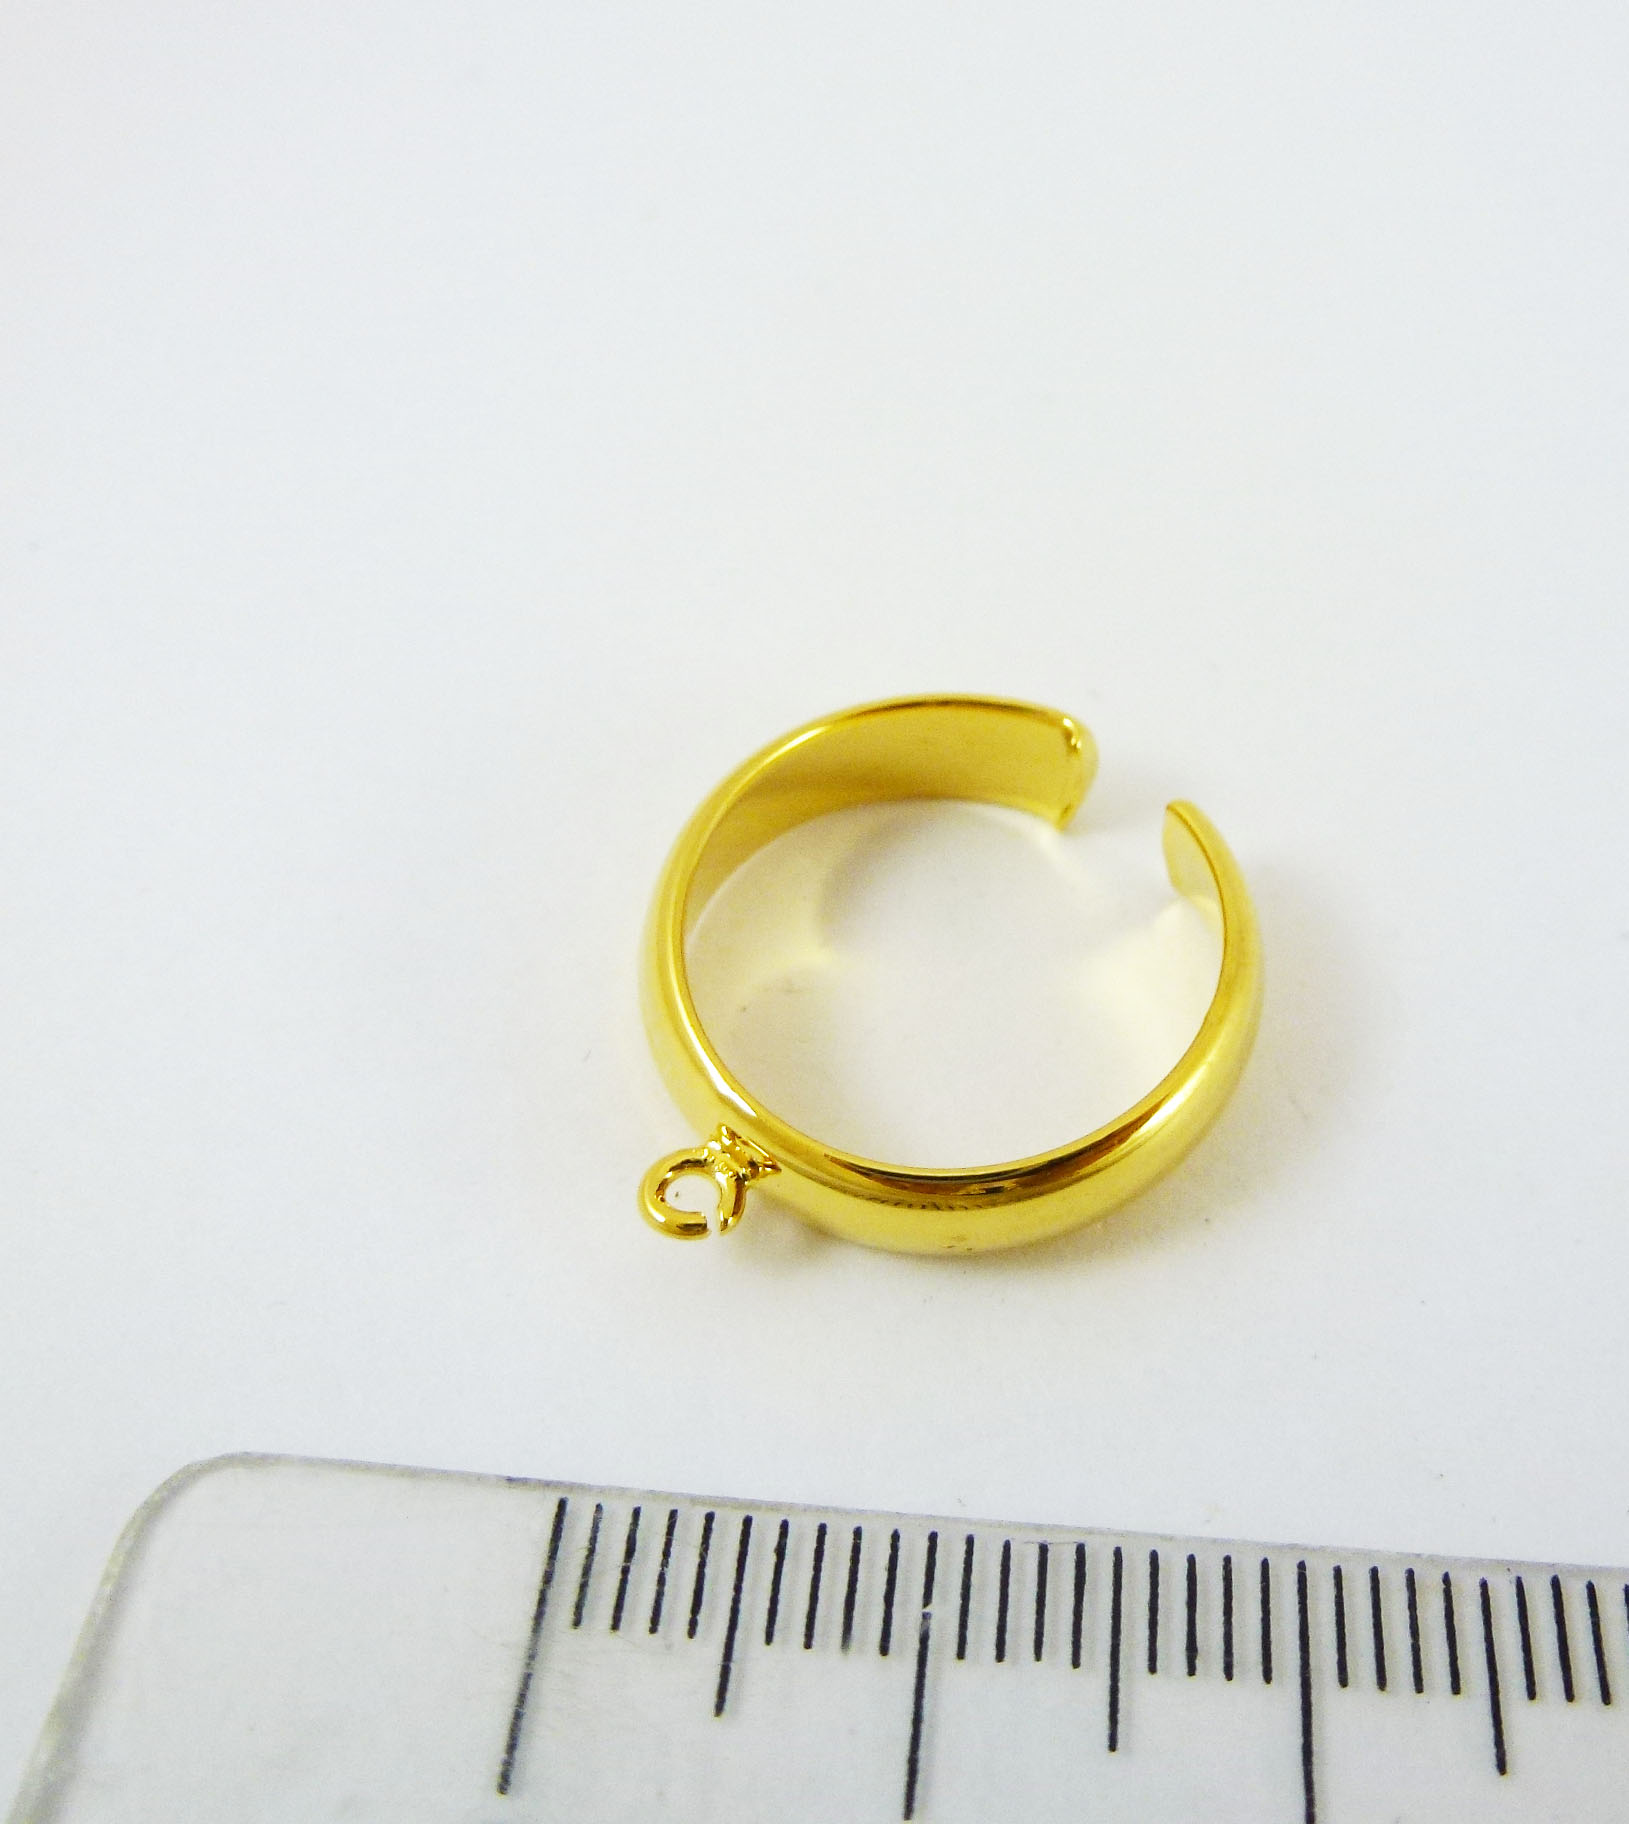 銅鍍金色下開口單孔式指環